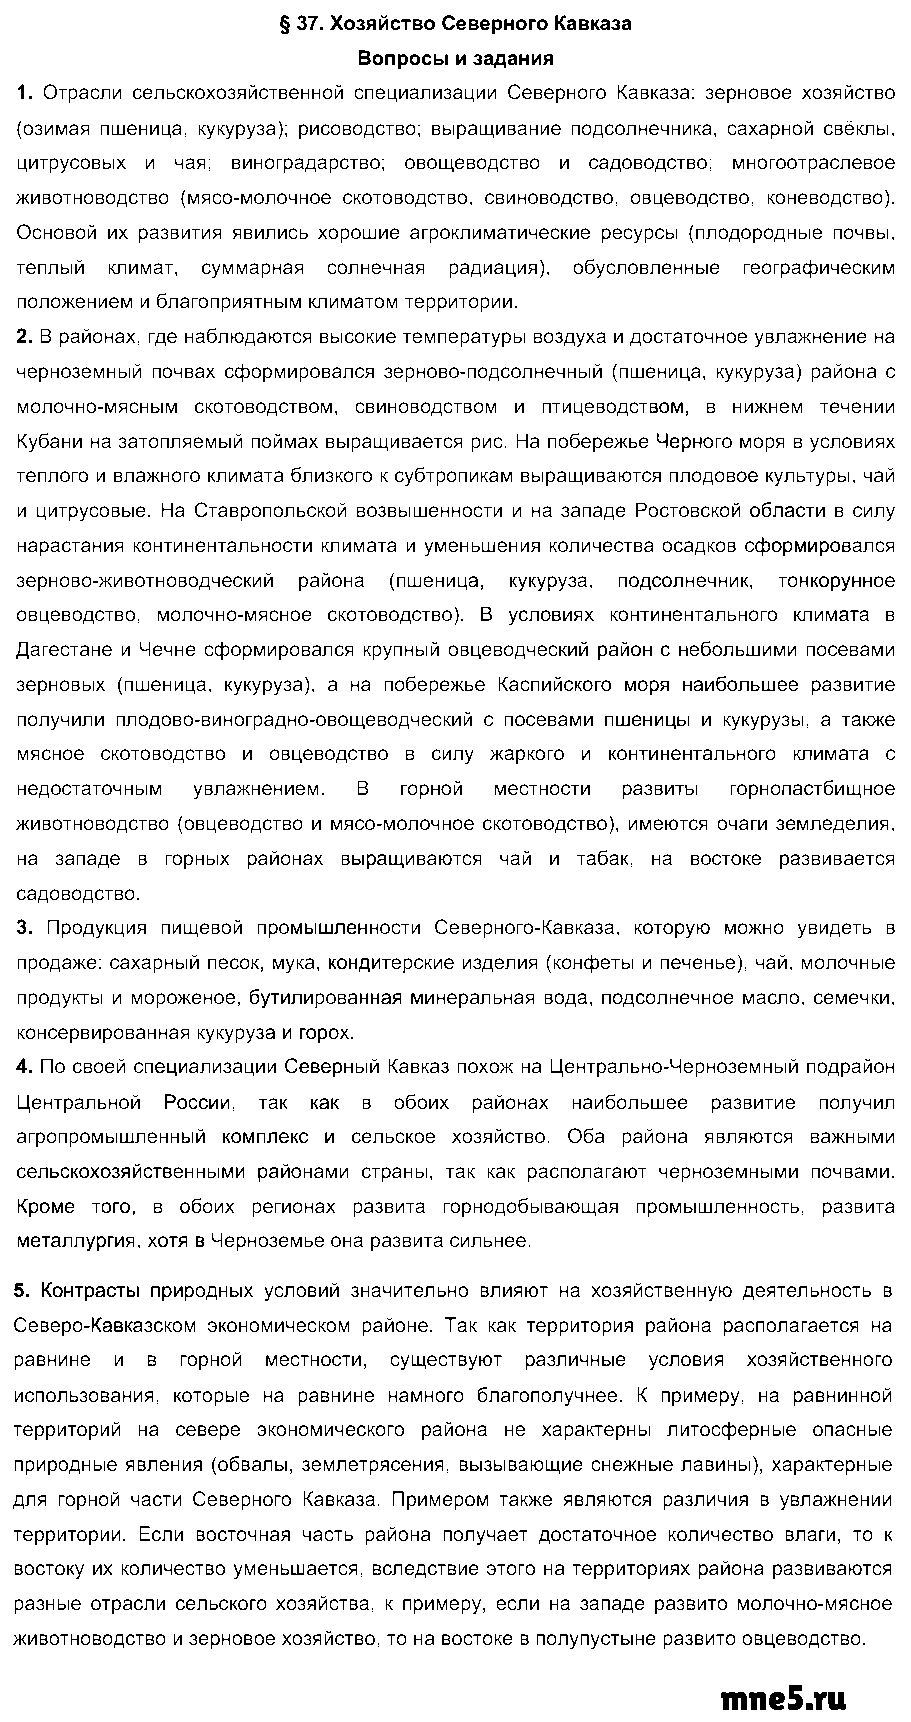 ГДЗ География 9 класс - §37. Хозяйство Северного Кавказа